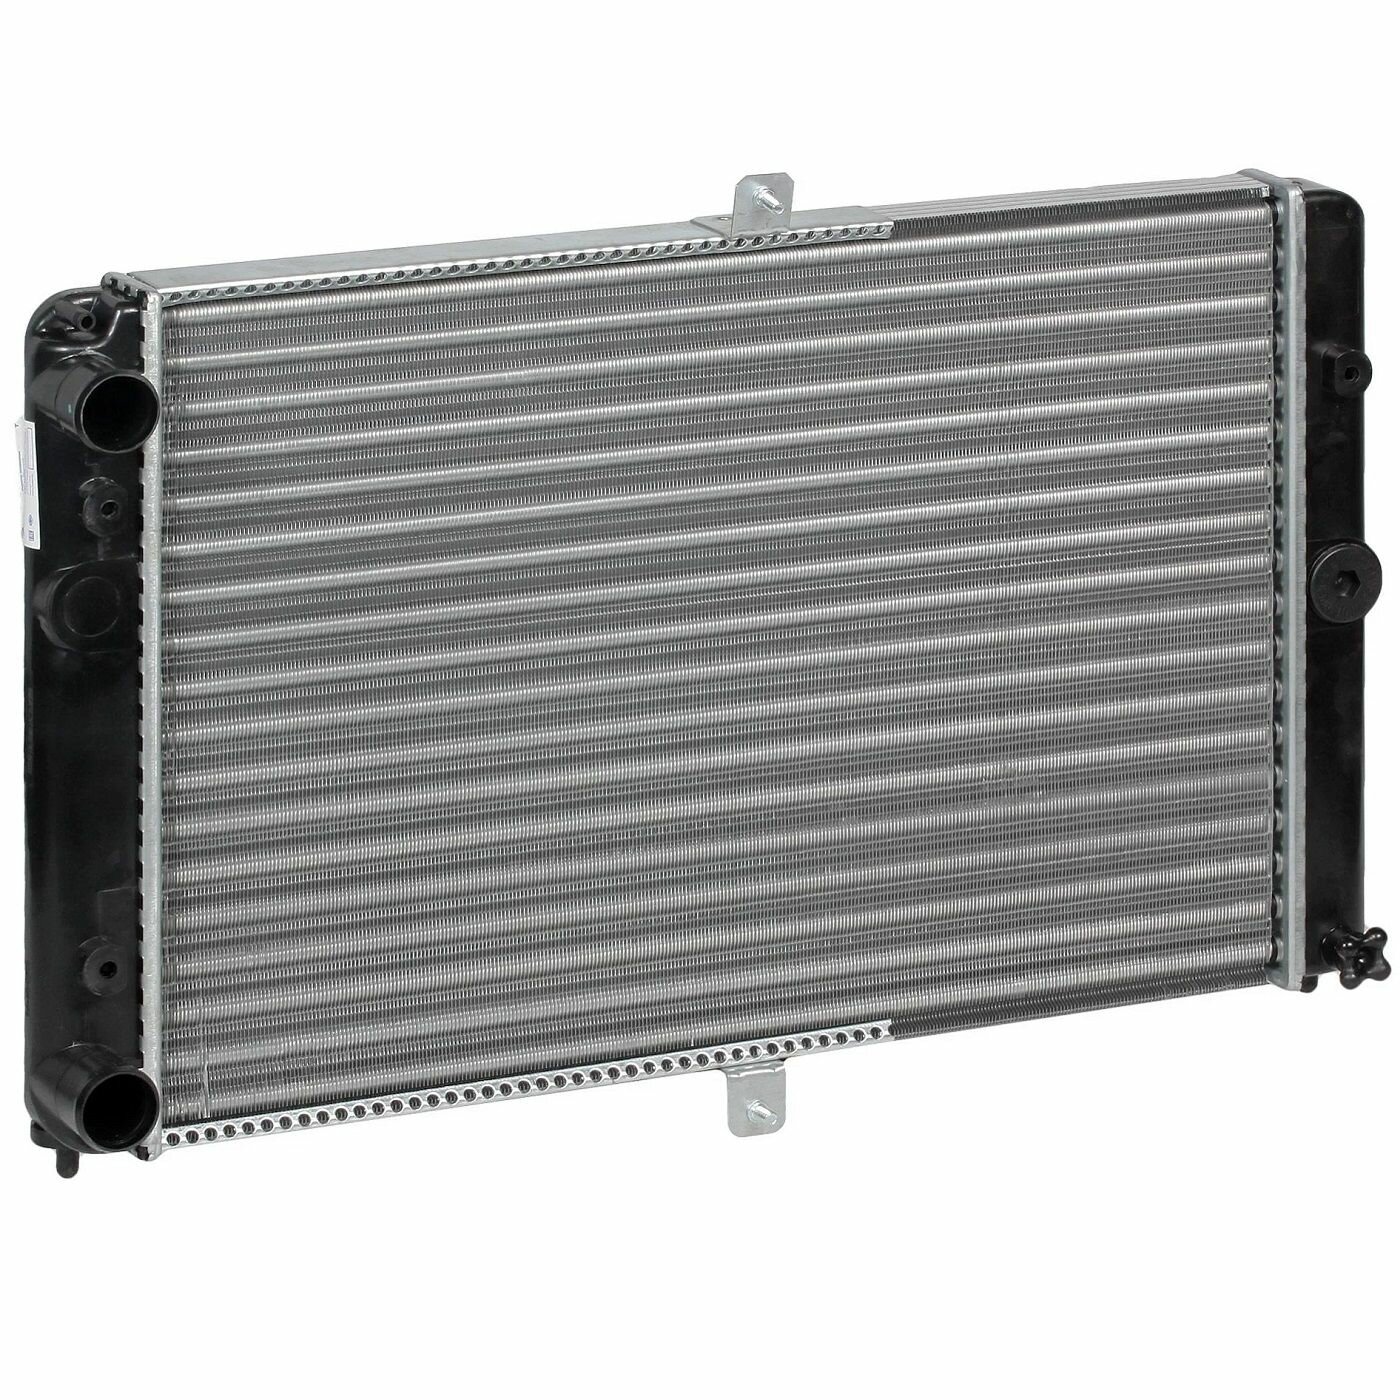 Радиатор охлаждения для автомобилей 2108-15 универсальный LRc 01080 LUZAR